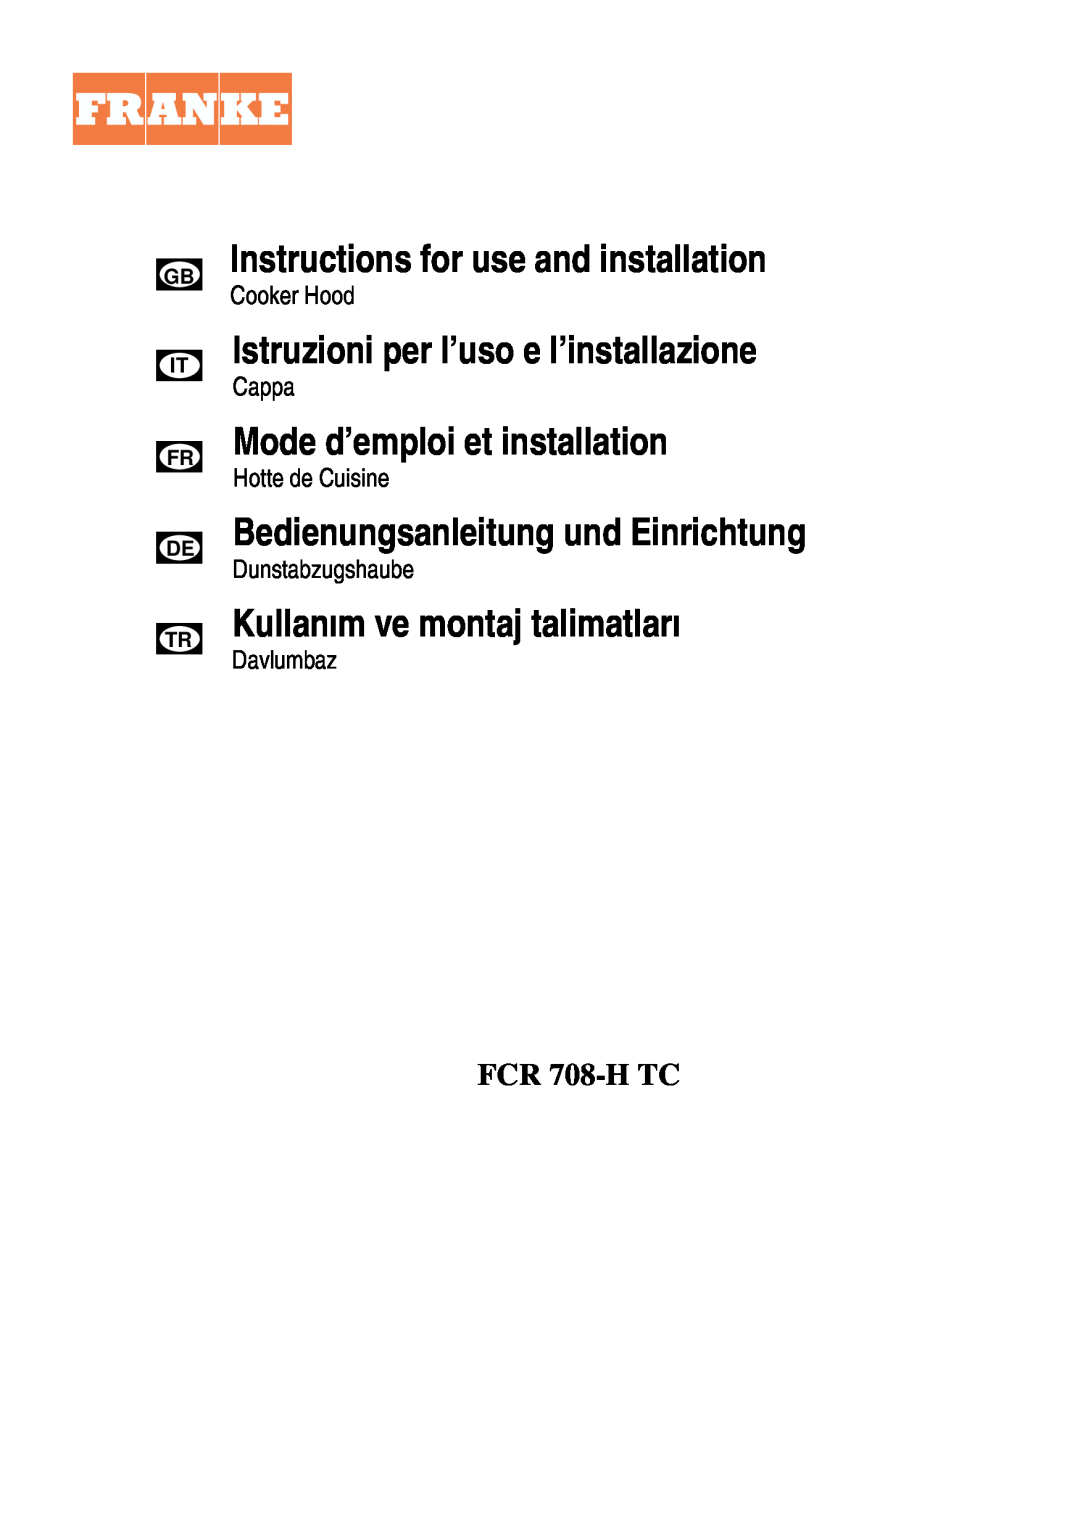 Franke Consumer Products FCR 708-H TC manual Instructions for use and installation, Istruzioni per l’uso e l’installazione 